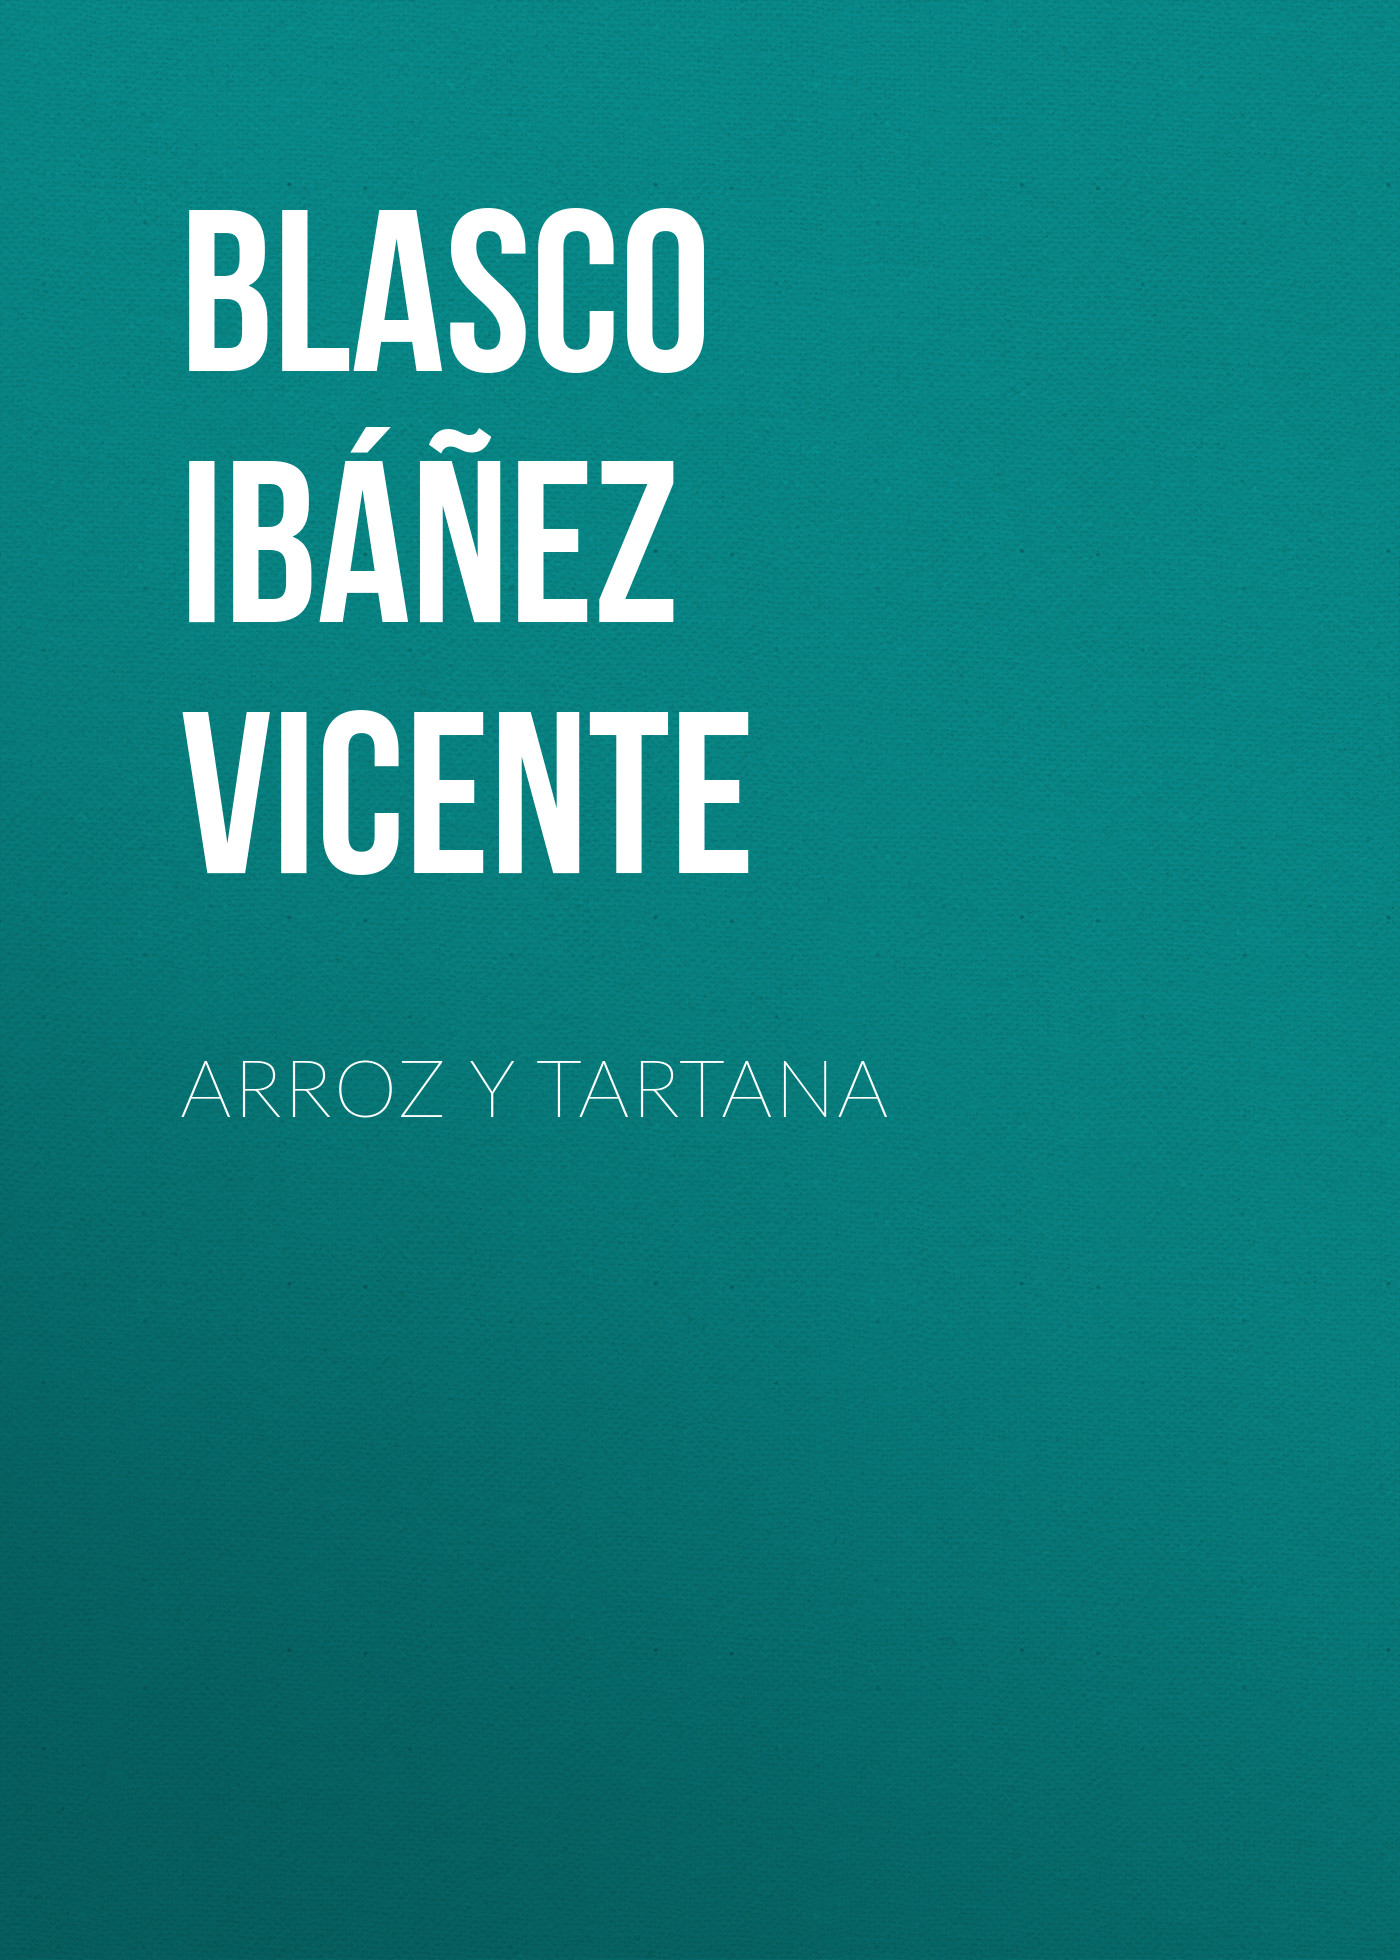 Книга Arroz y tartana из серии , созданная Vicente Blasco Ibáñez, может относится к жанру Зарубежная классика, Зарубежная старинная литература. Стоимость электронной книги Arroz y tartana с идентификатором 36364590 составляет 0 руб.